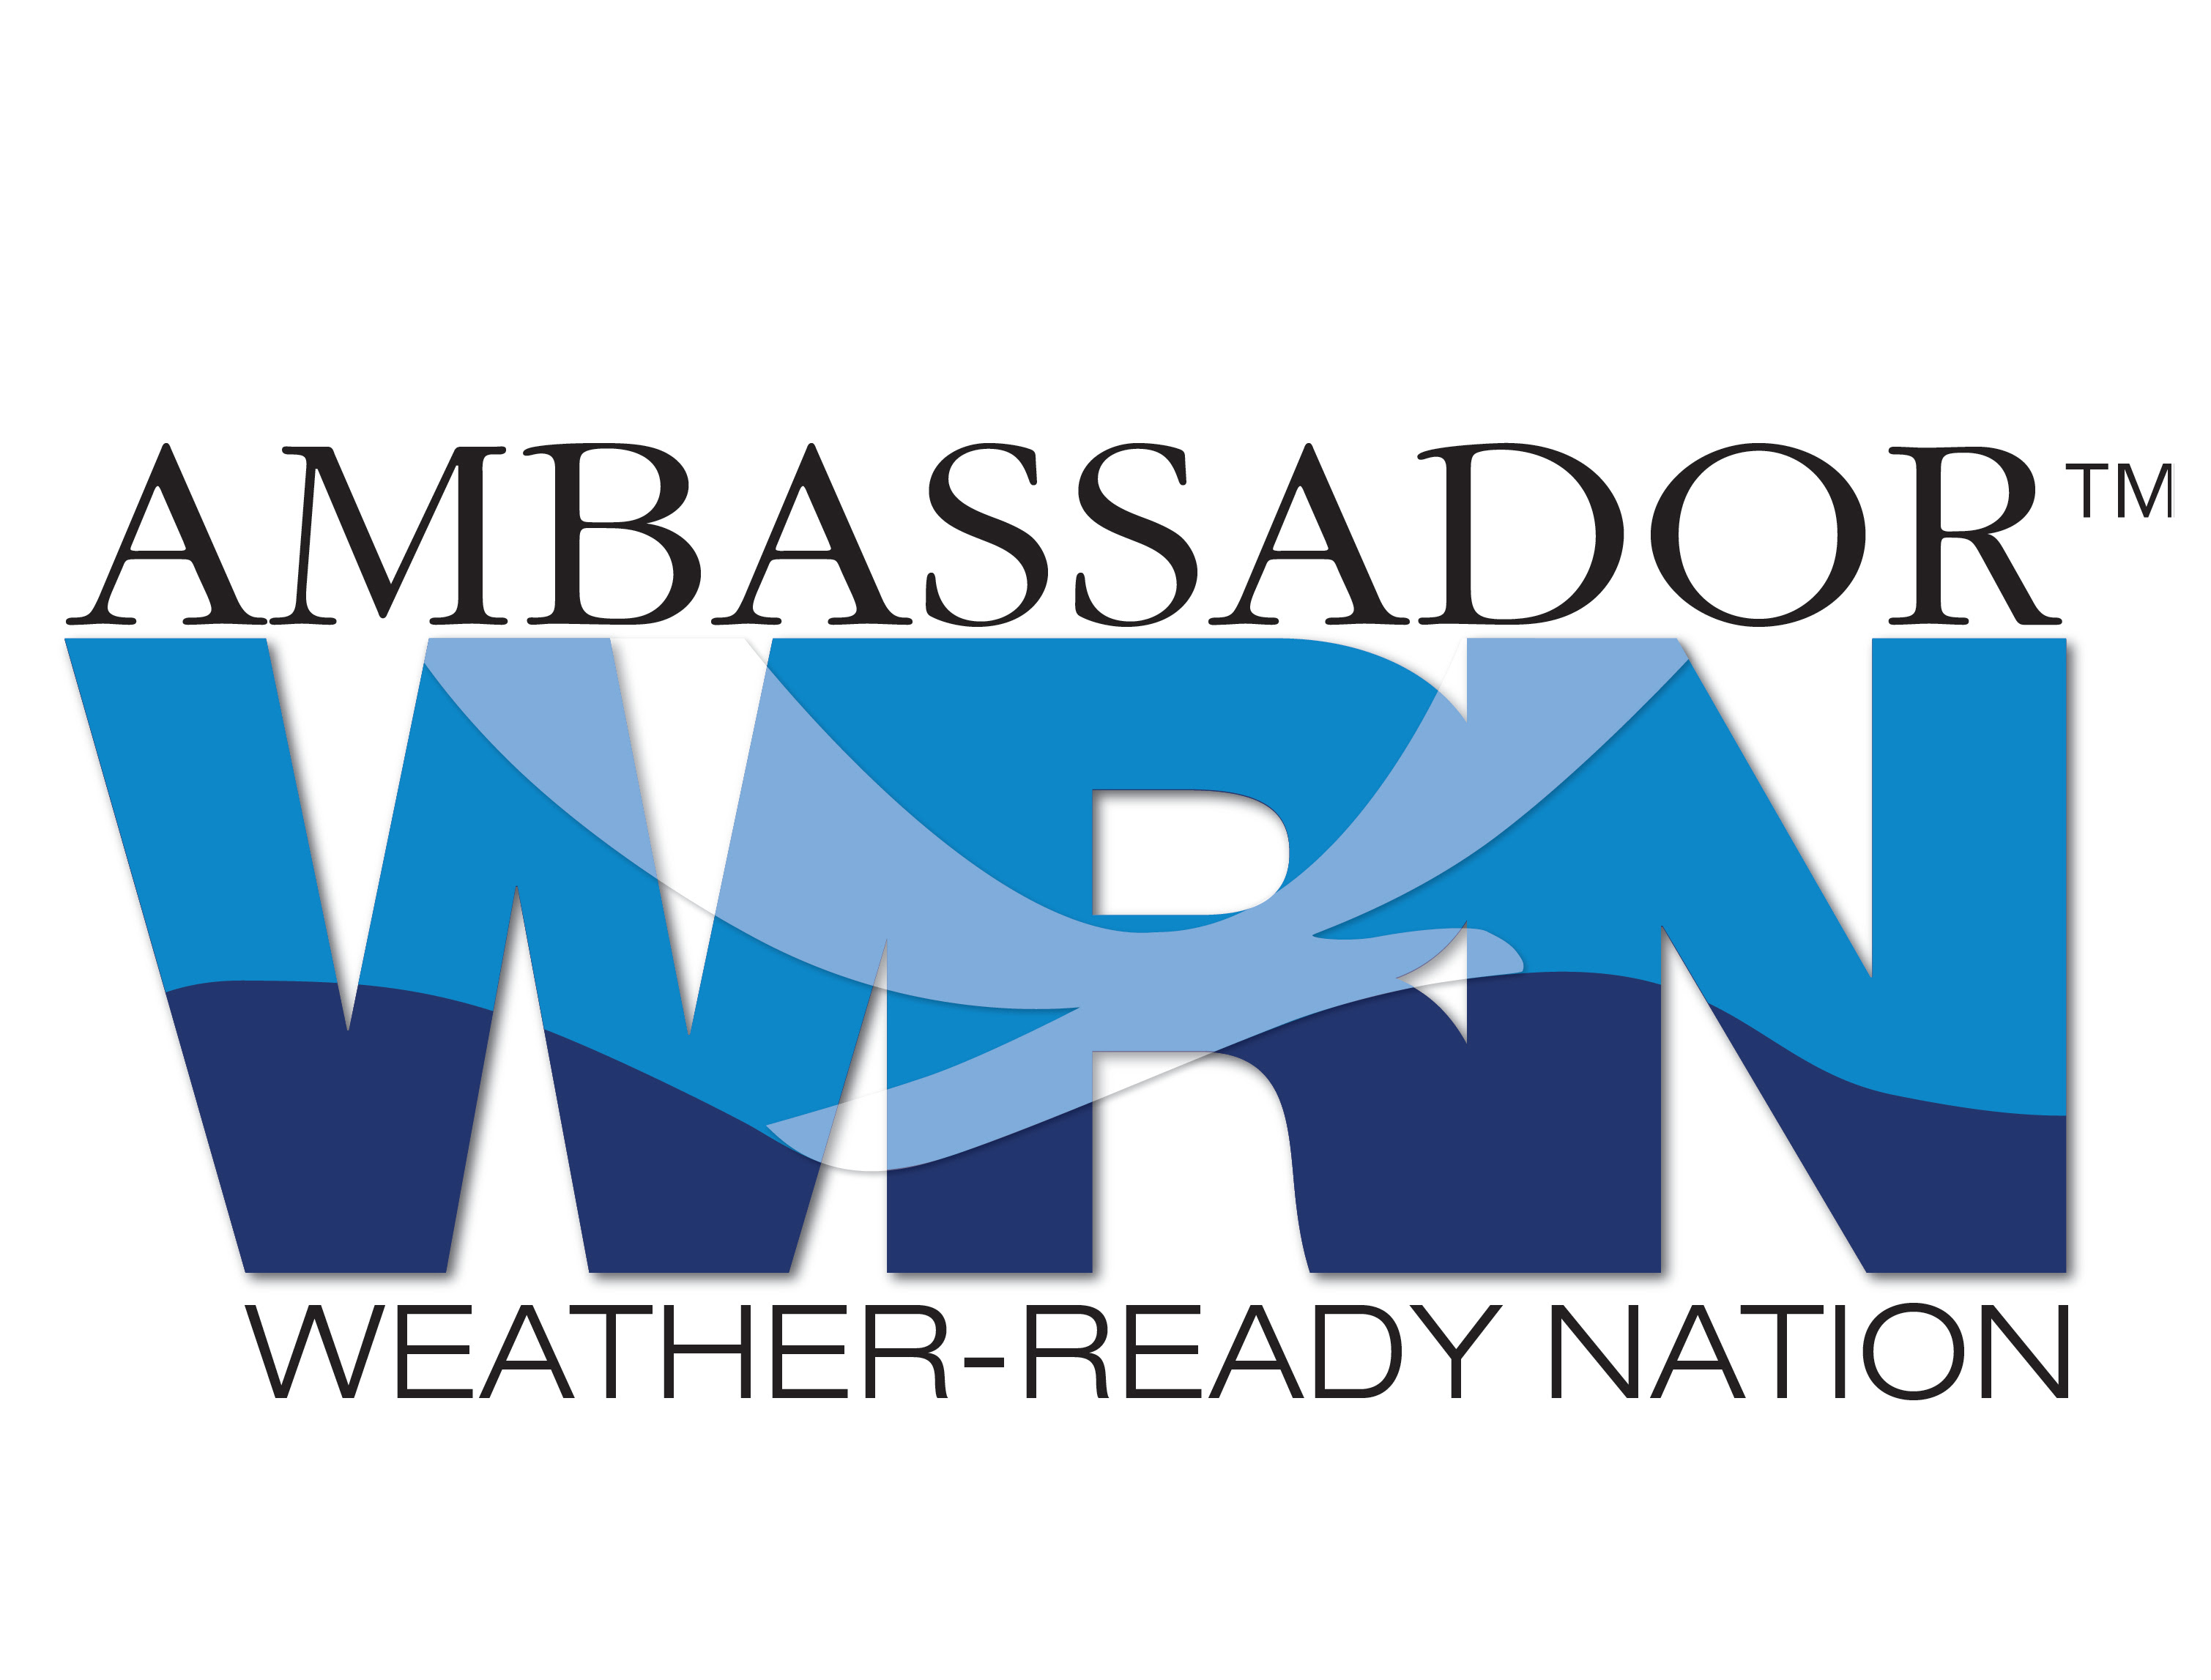 Logotipo del Embajador de la nación Weather-Ready.